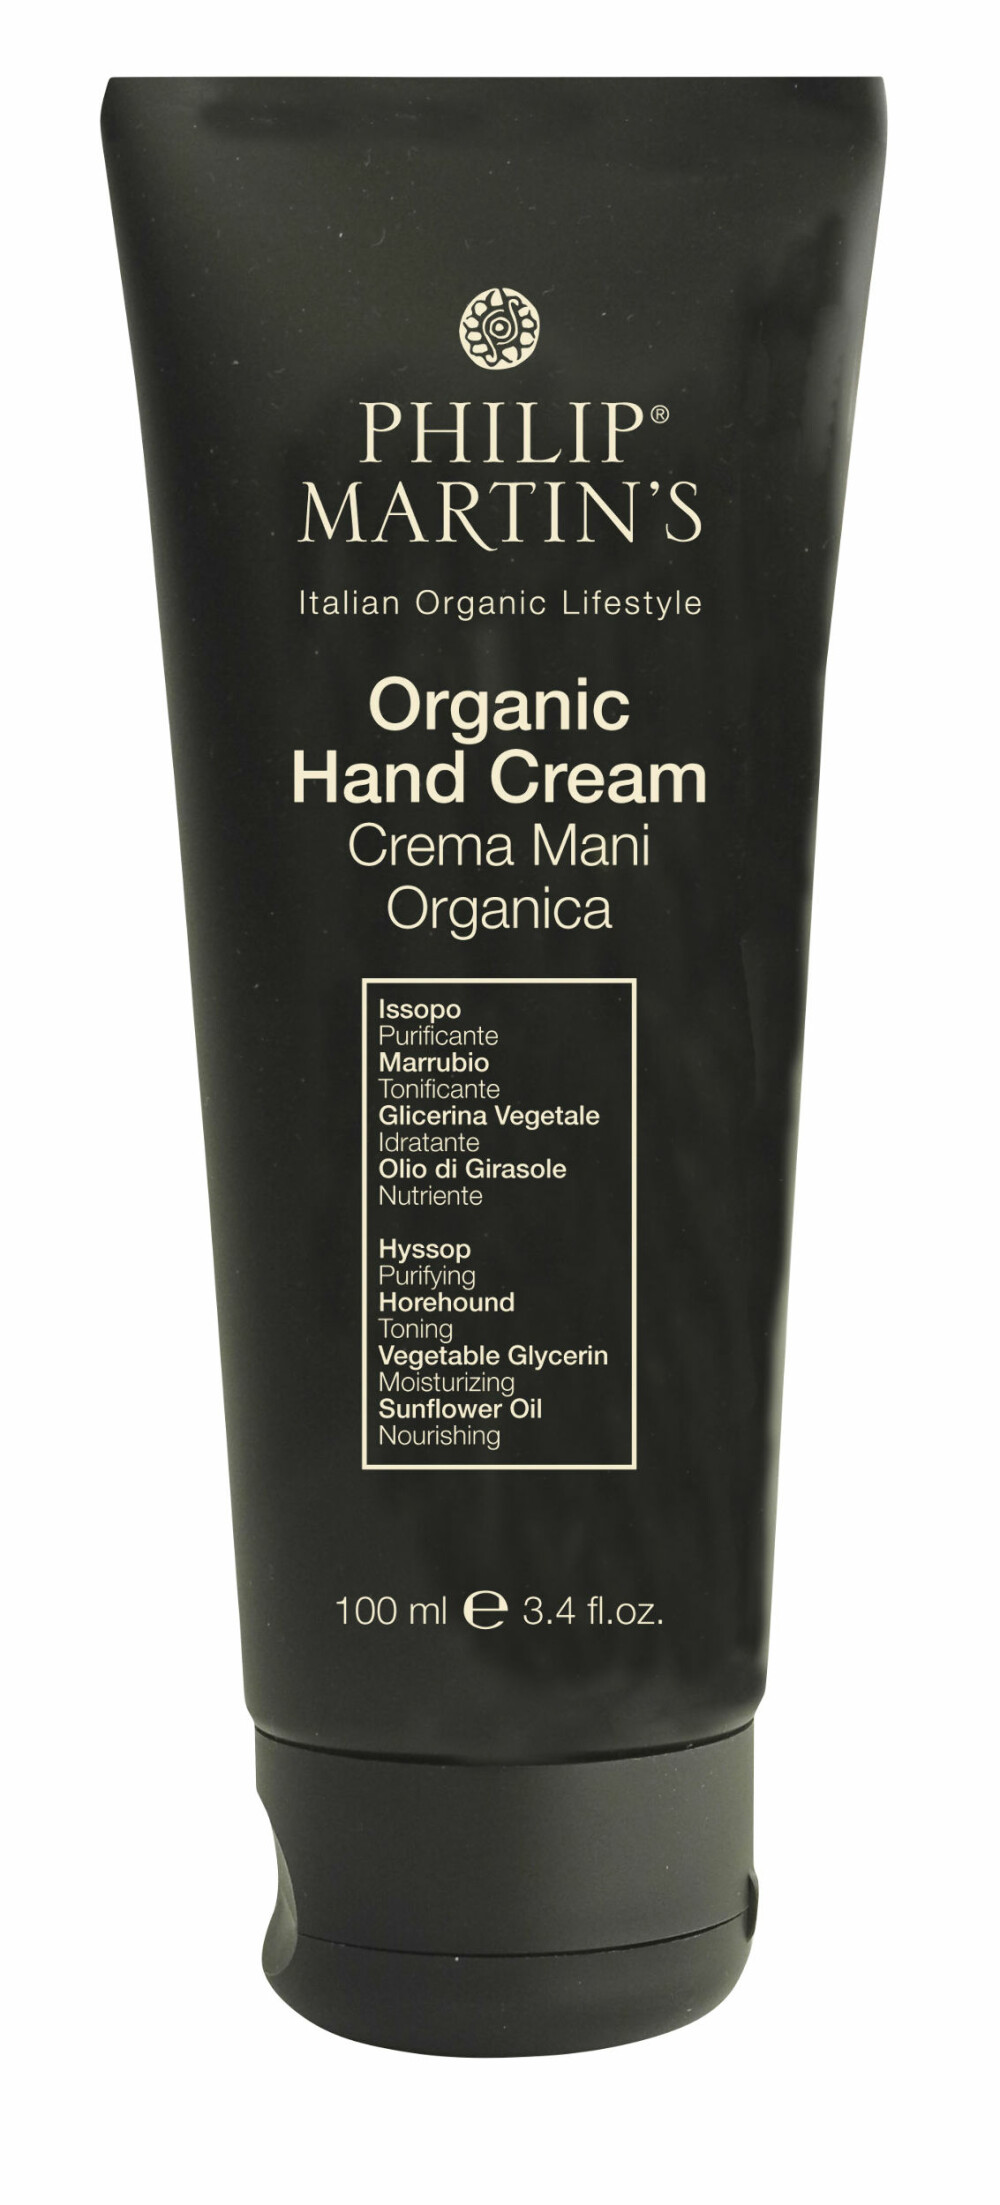 MYK ØKOLOGISK: Philip Martin’s Organic hand Cream, 100 ml, kr 245.